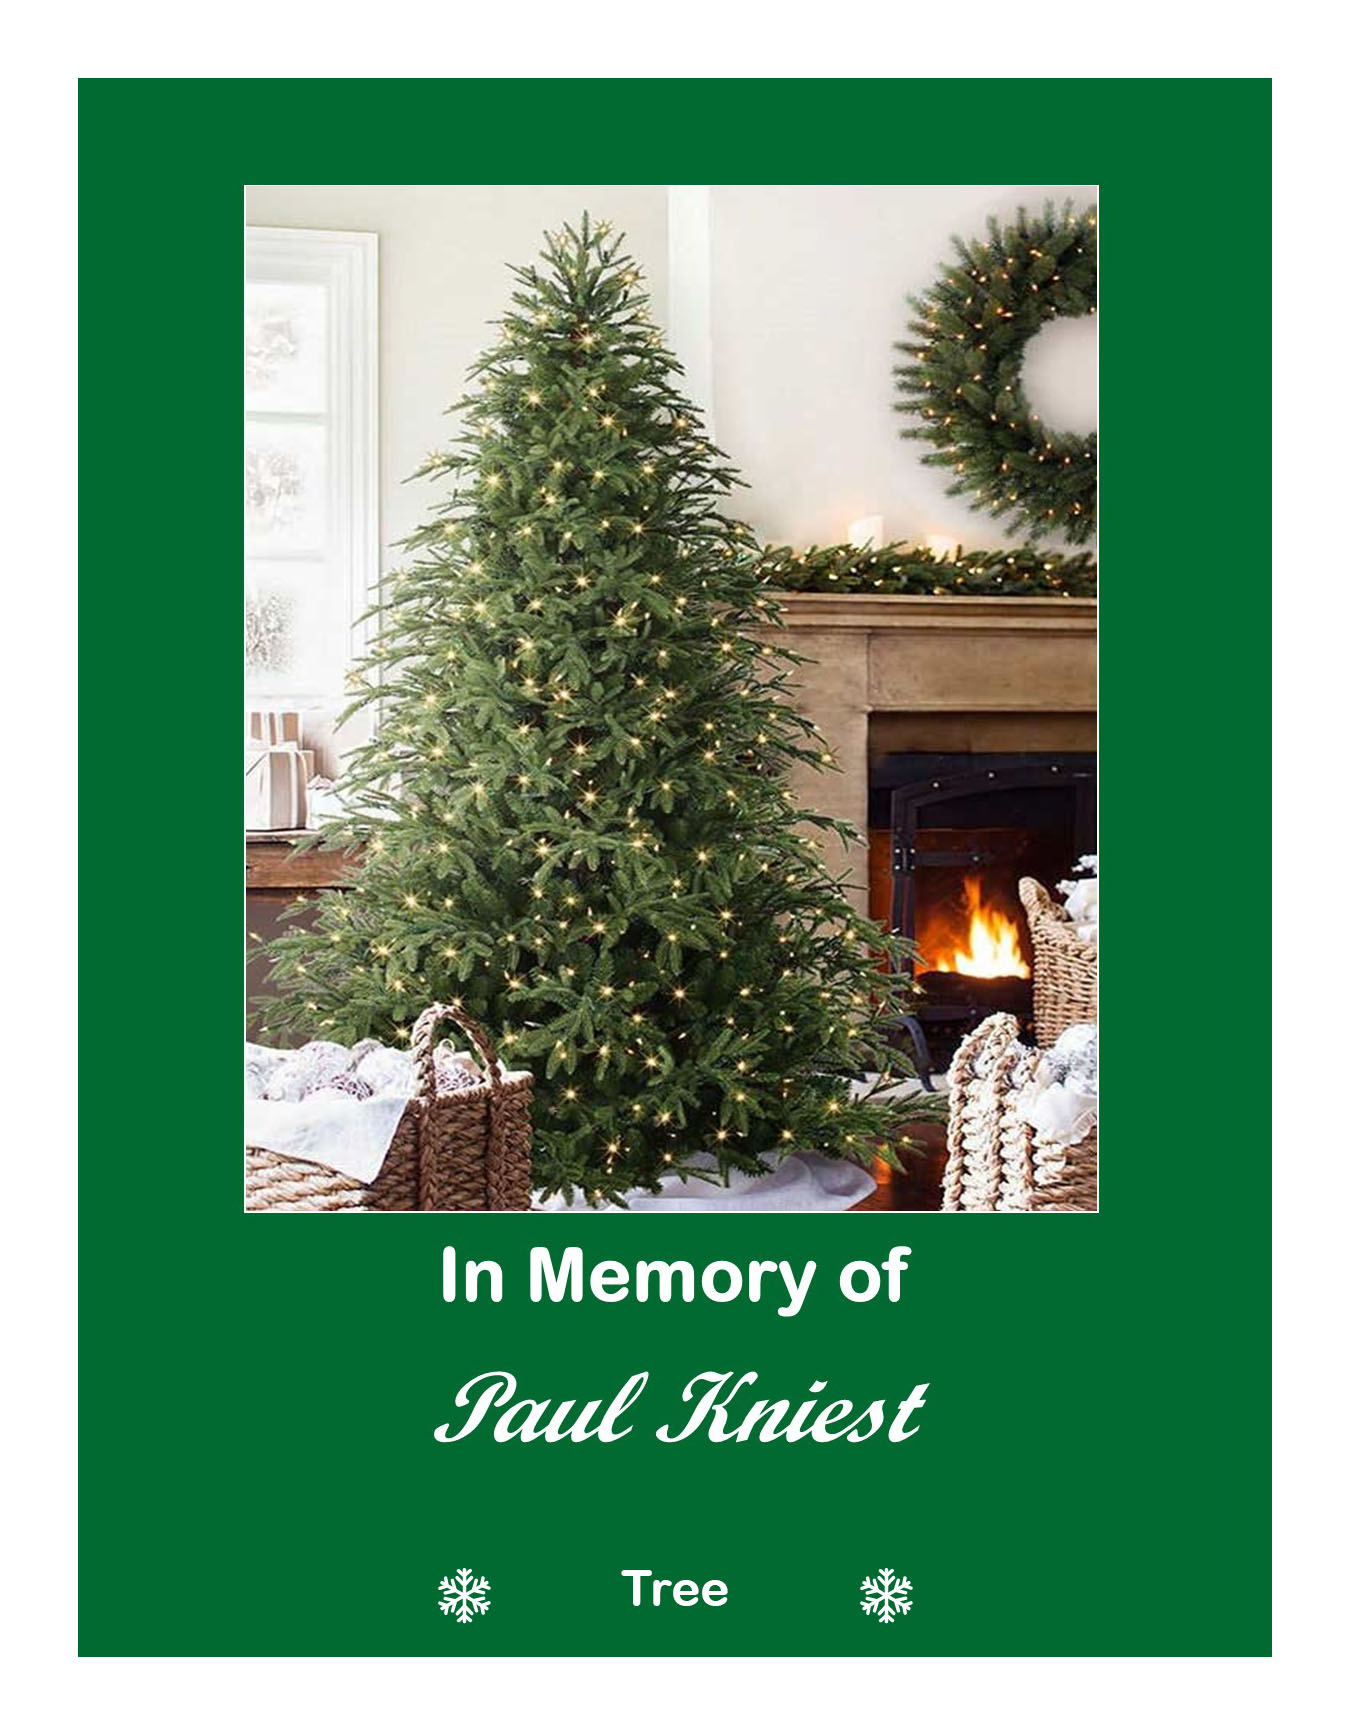 In memory of Paul Kniest